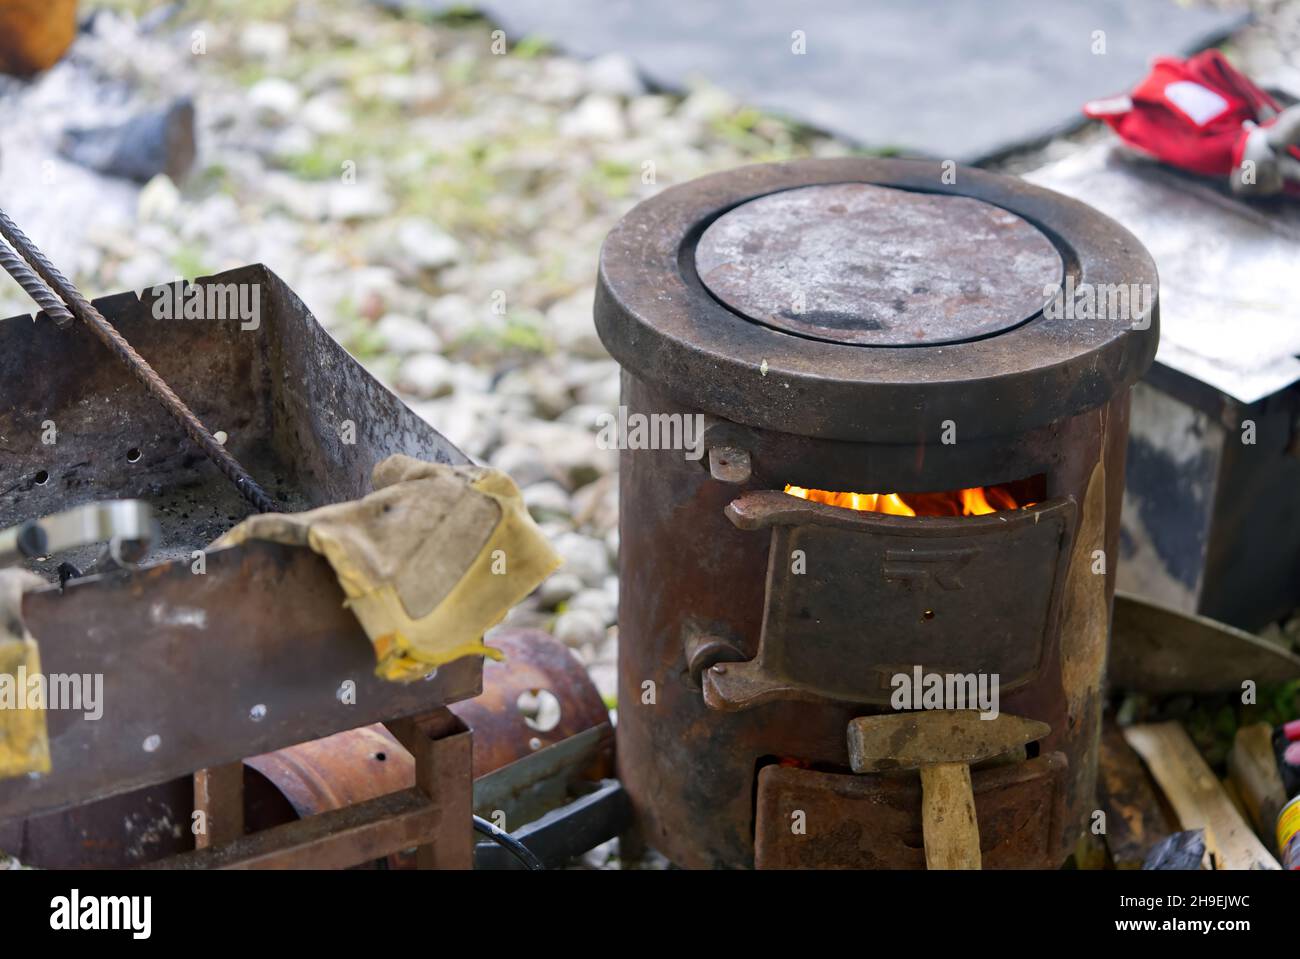 Cocinar en la naturaleza mientras pesca. Estufa de madera vieja y caldero. Cocinar en una chimenea. Picnic en la caza Foto de stock